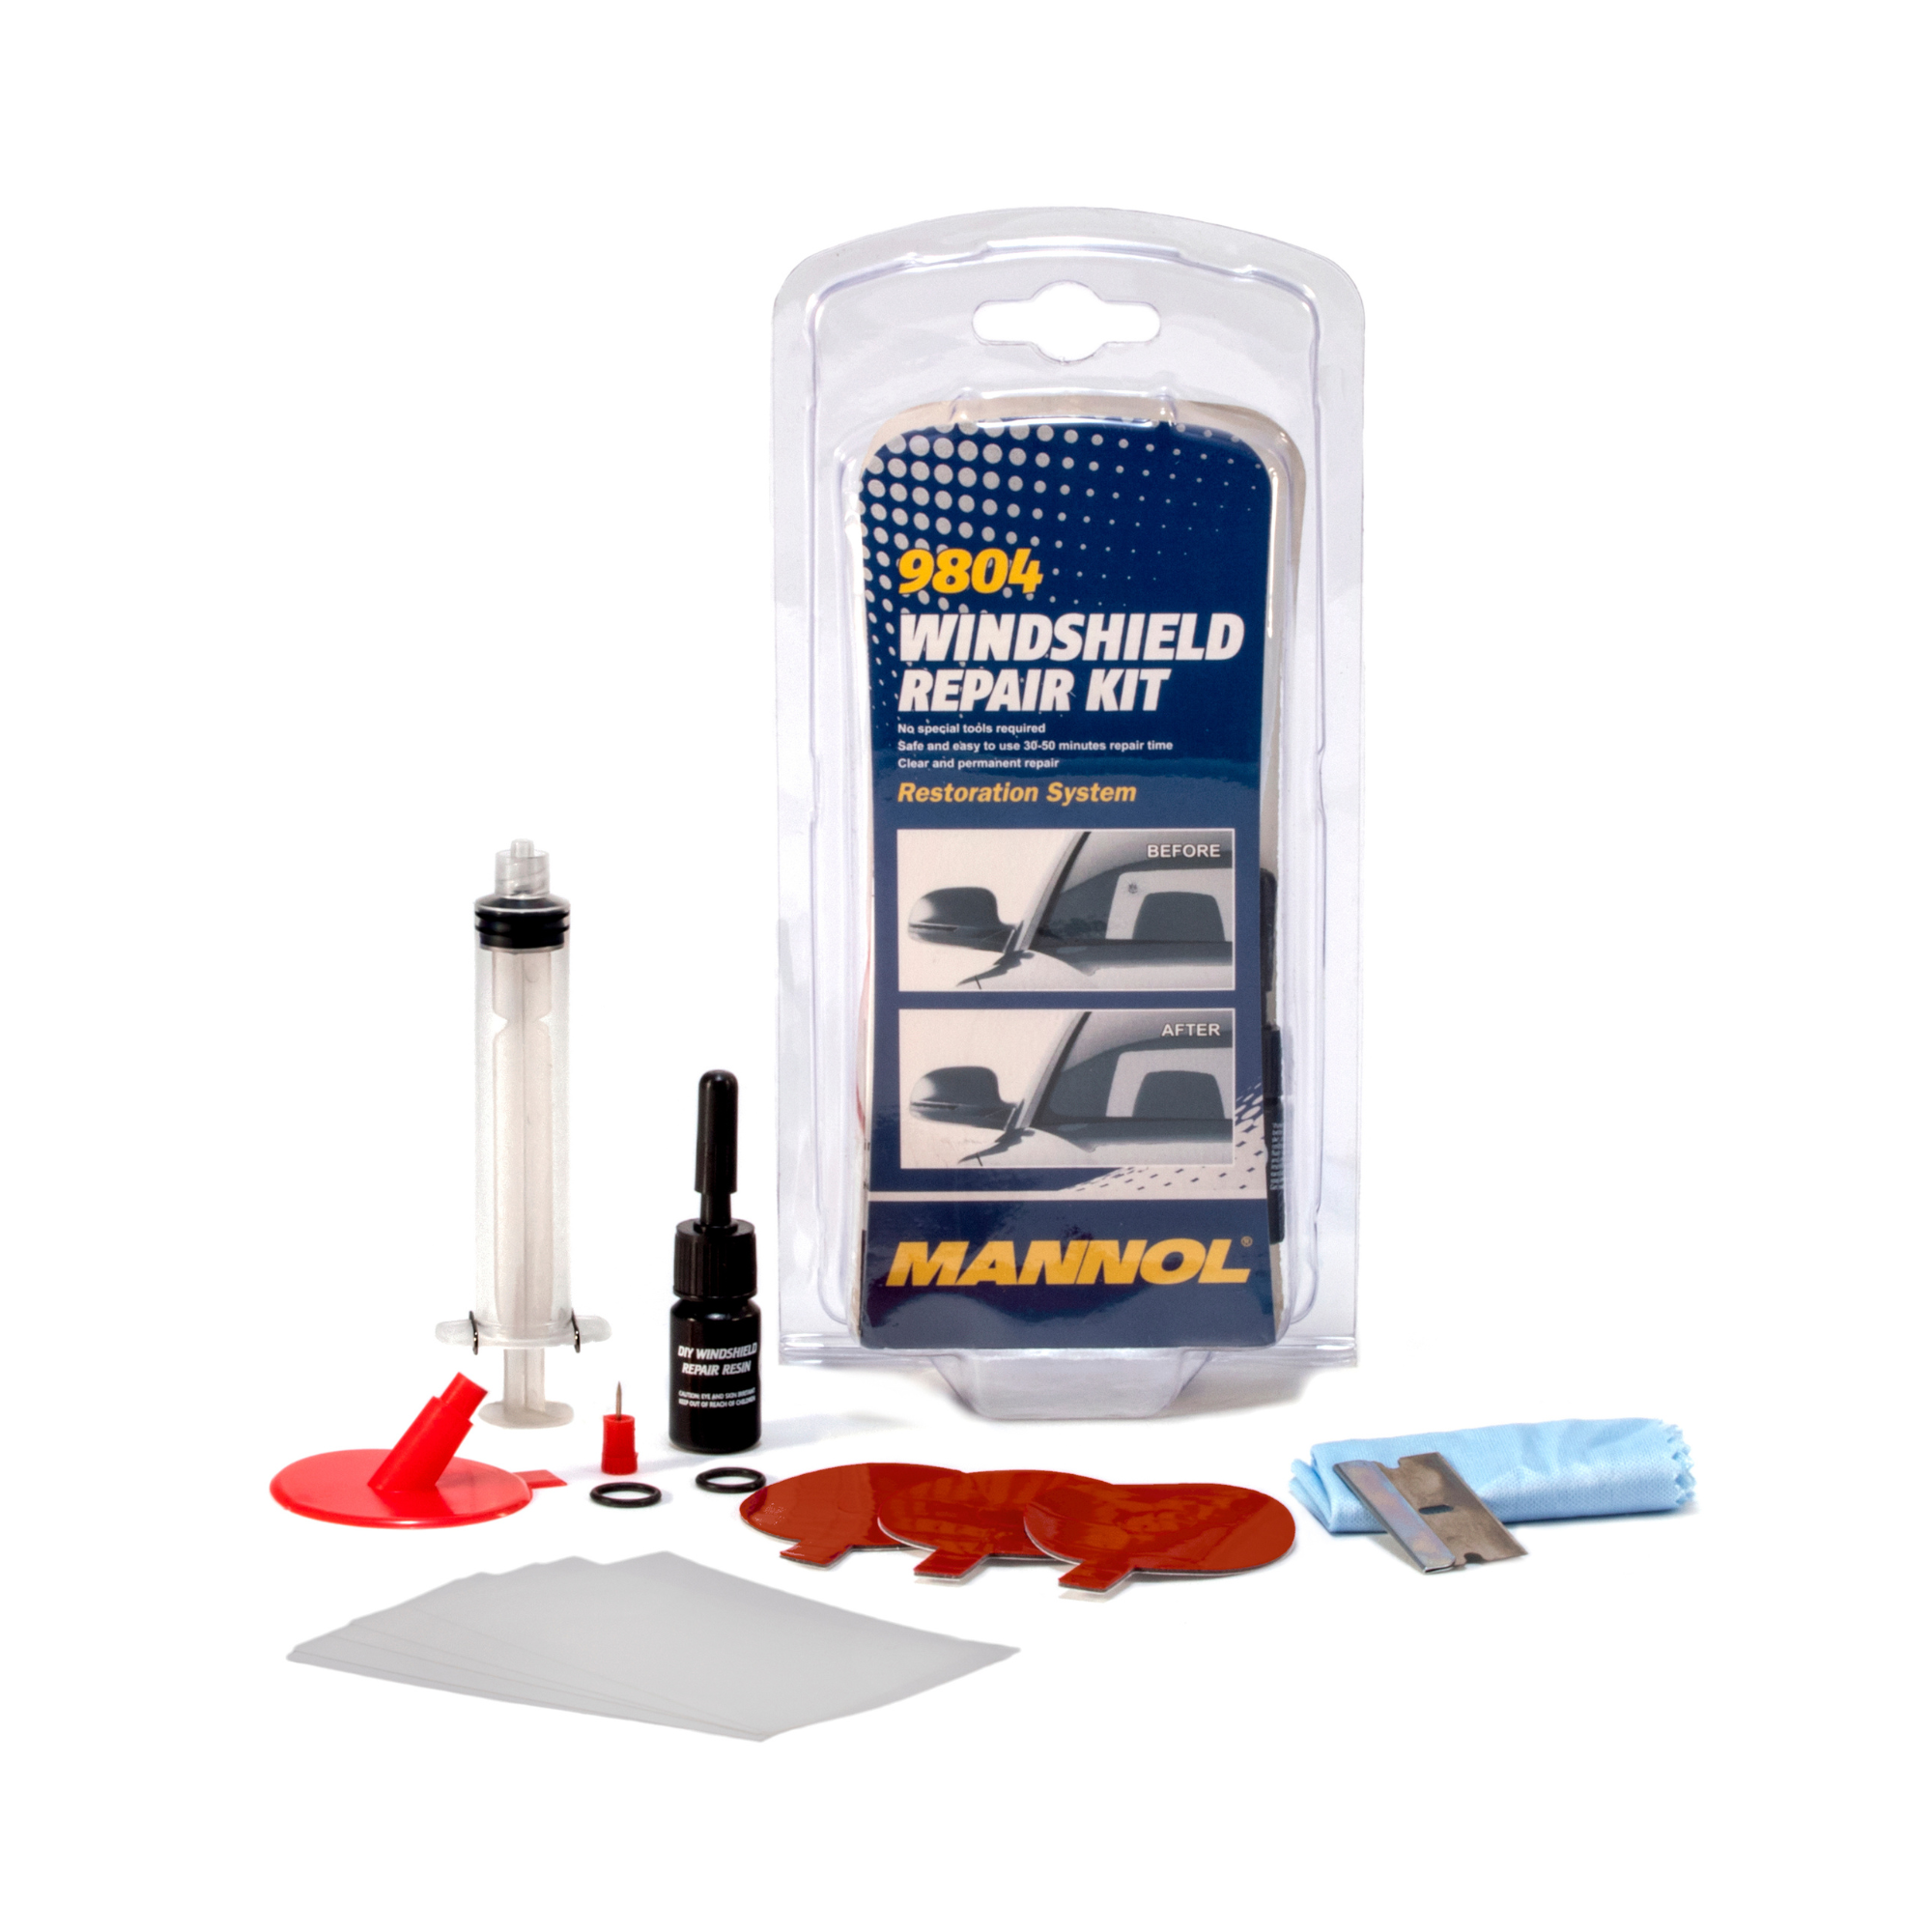 Szélvédő javító szett MANNOL Windshield Repair Kit 9804